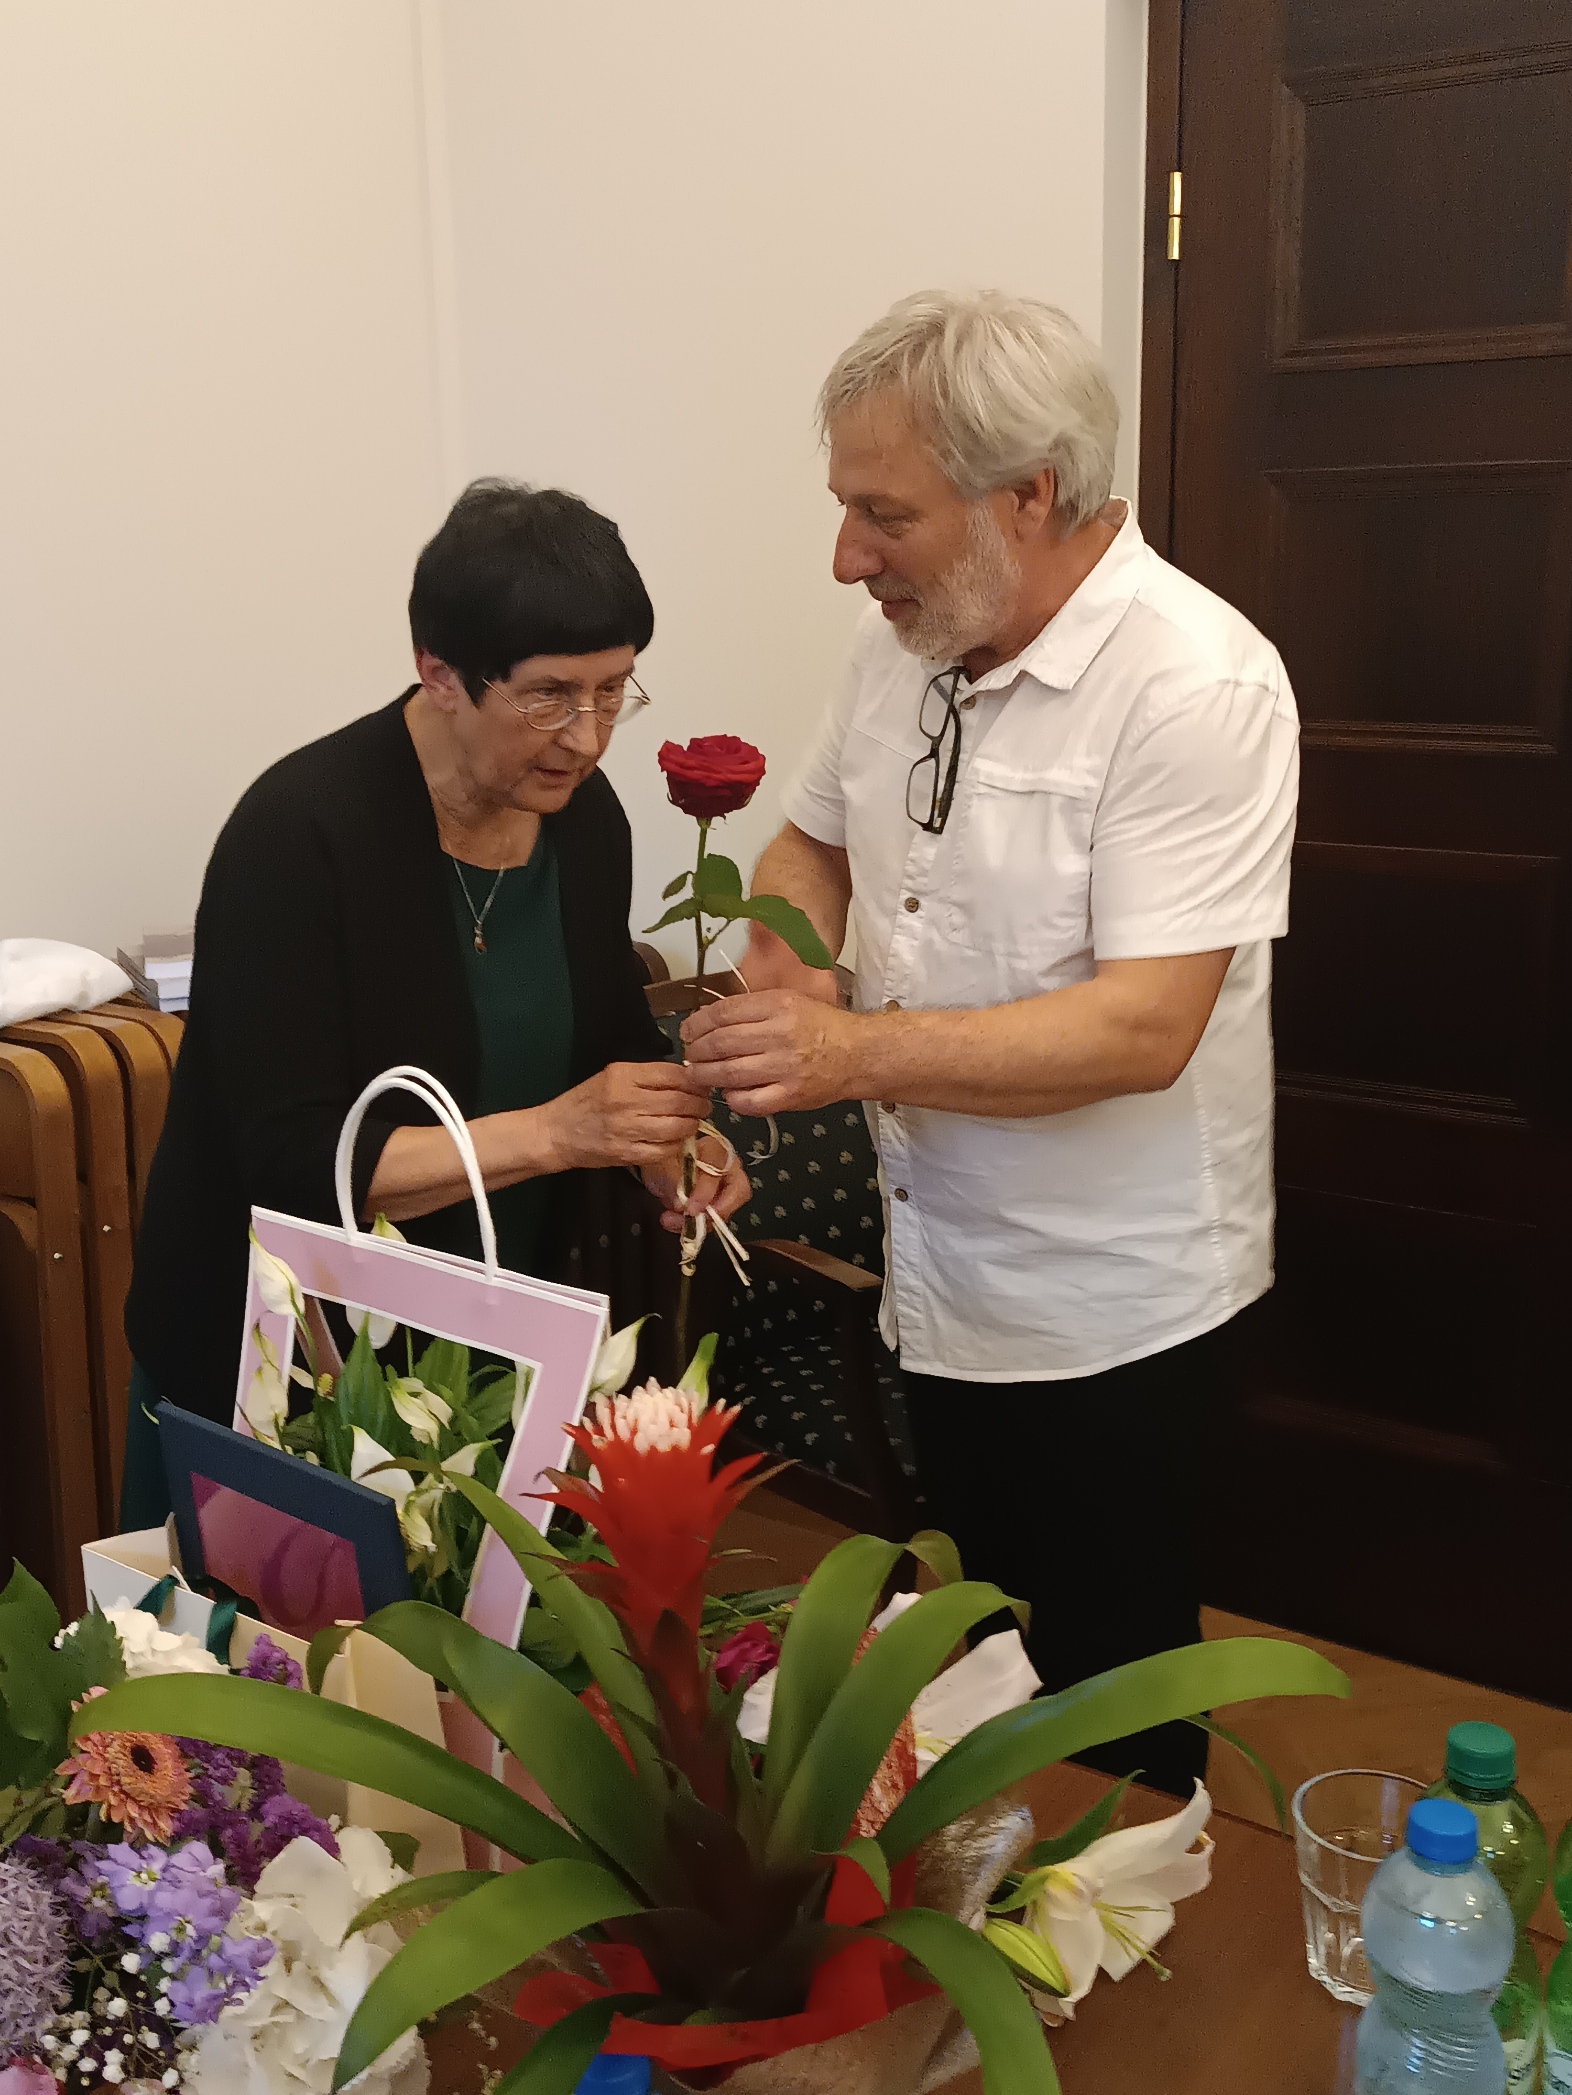 Prof. Zbigniew Kopeć wręcza prof. Sienkiewicz czerwoną różę, mówiąc coś do jubilatki. Przed nimi na stole leży mnóstwo kwiatów i prezentów.